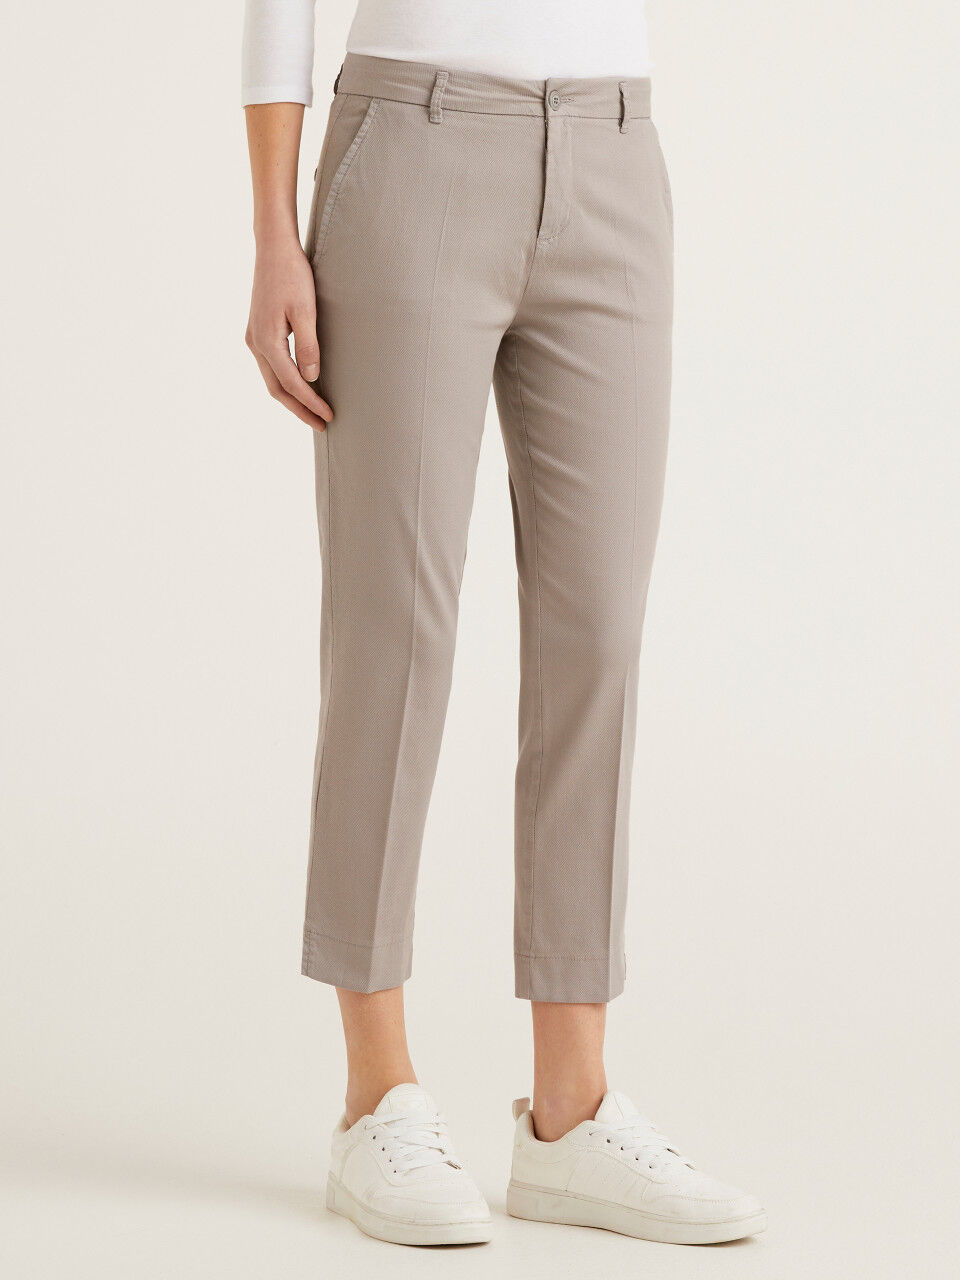 Buy Beige Trousers  Pants for Women by TOMMY HILFIGER Online  Ajiocom